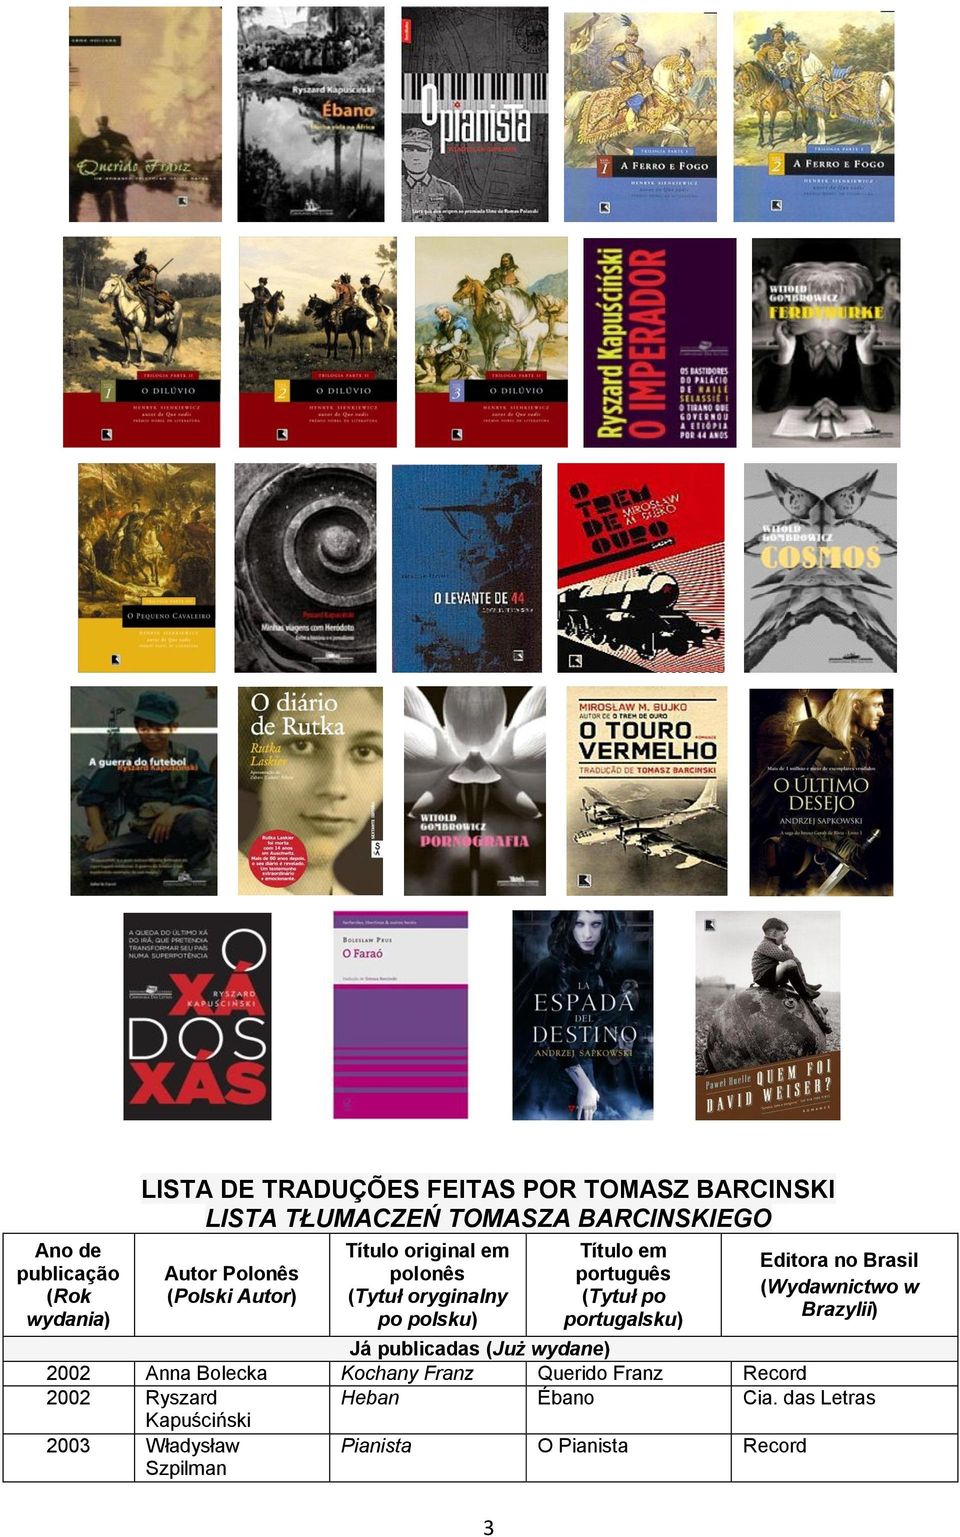 português (Tytuł po portugalsku) Editora no Brasil (Wydawnictwo w Brazylii) Já publicadas (Już wydane) 2002 Anna